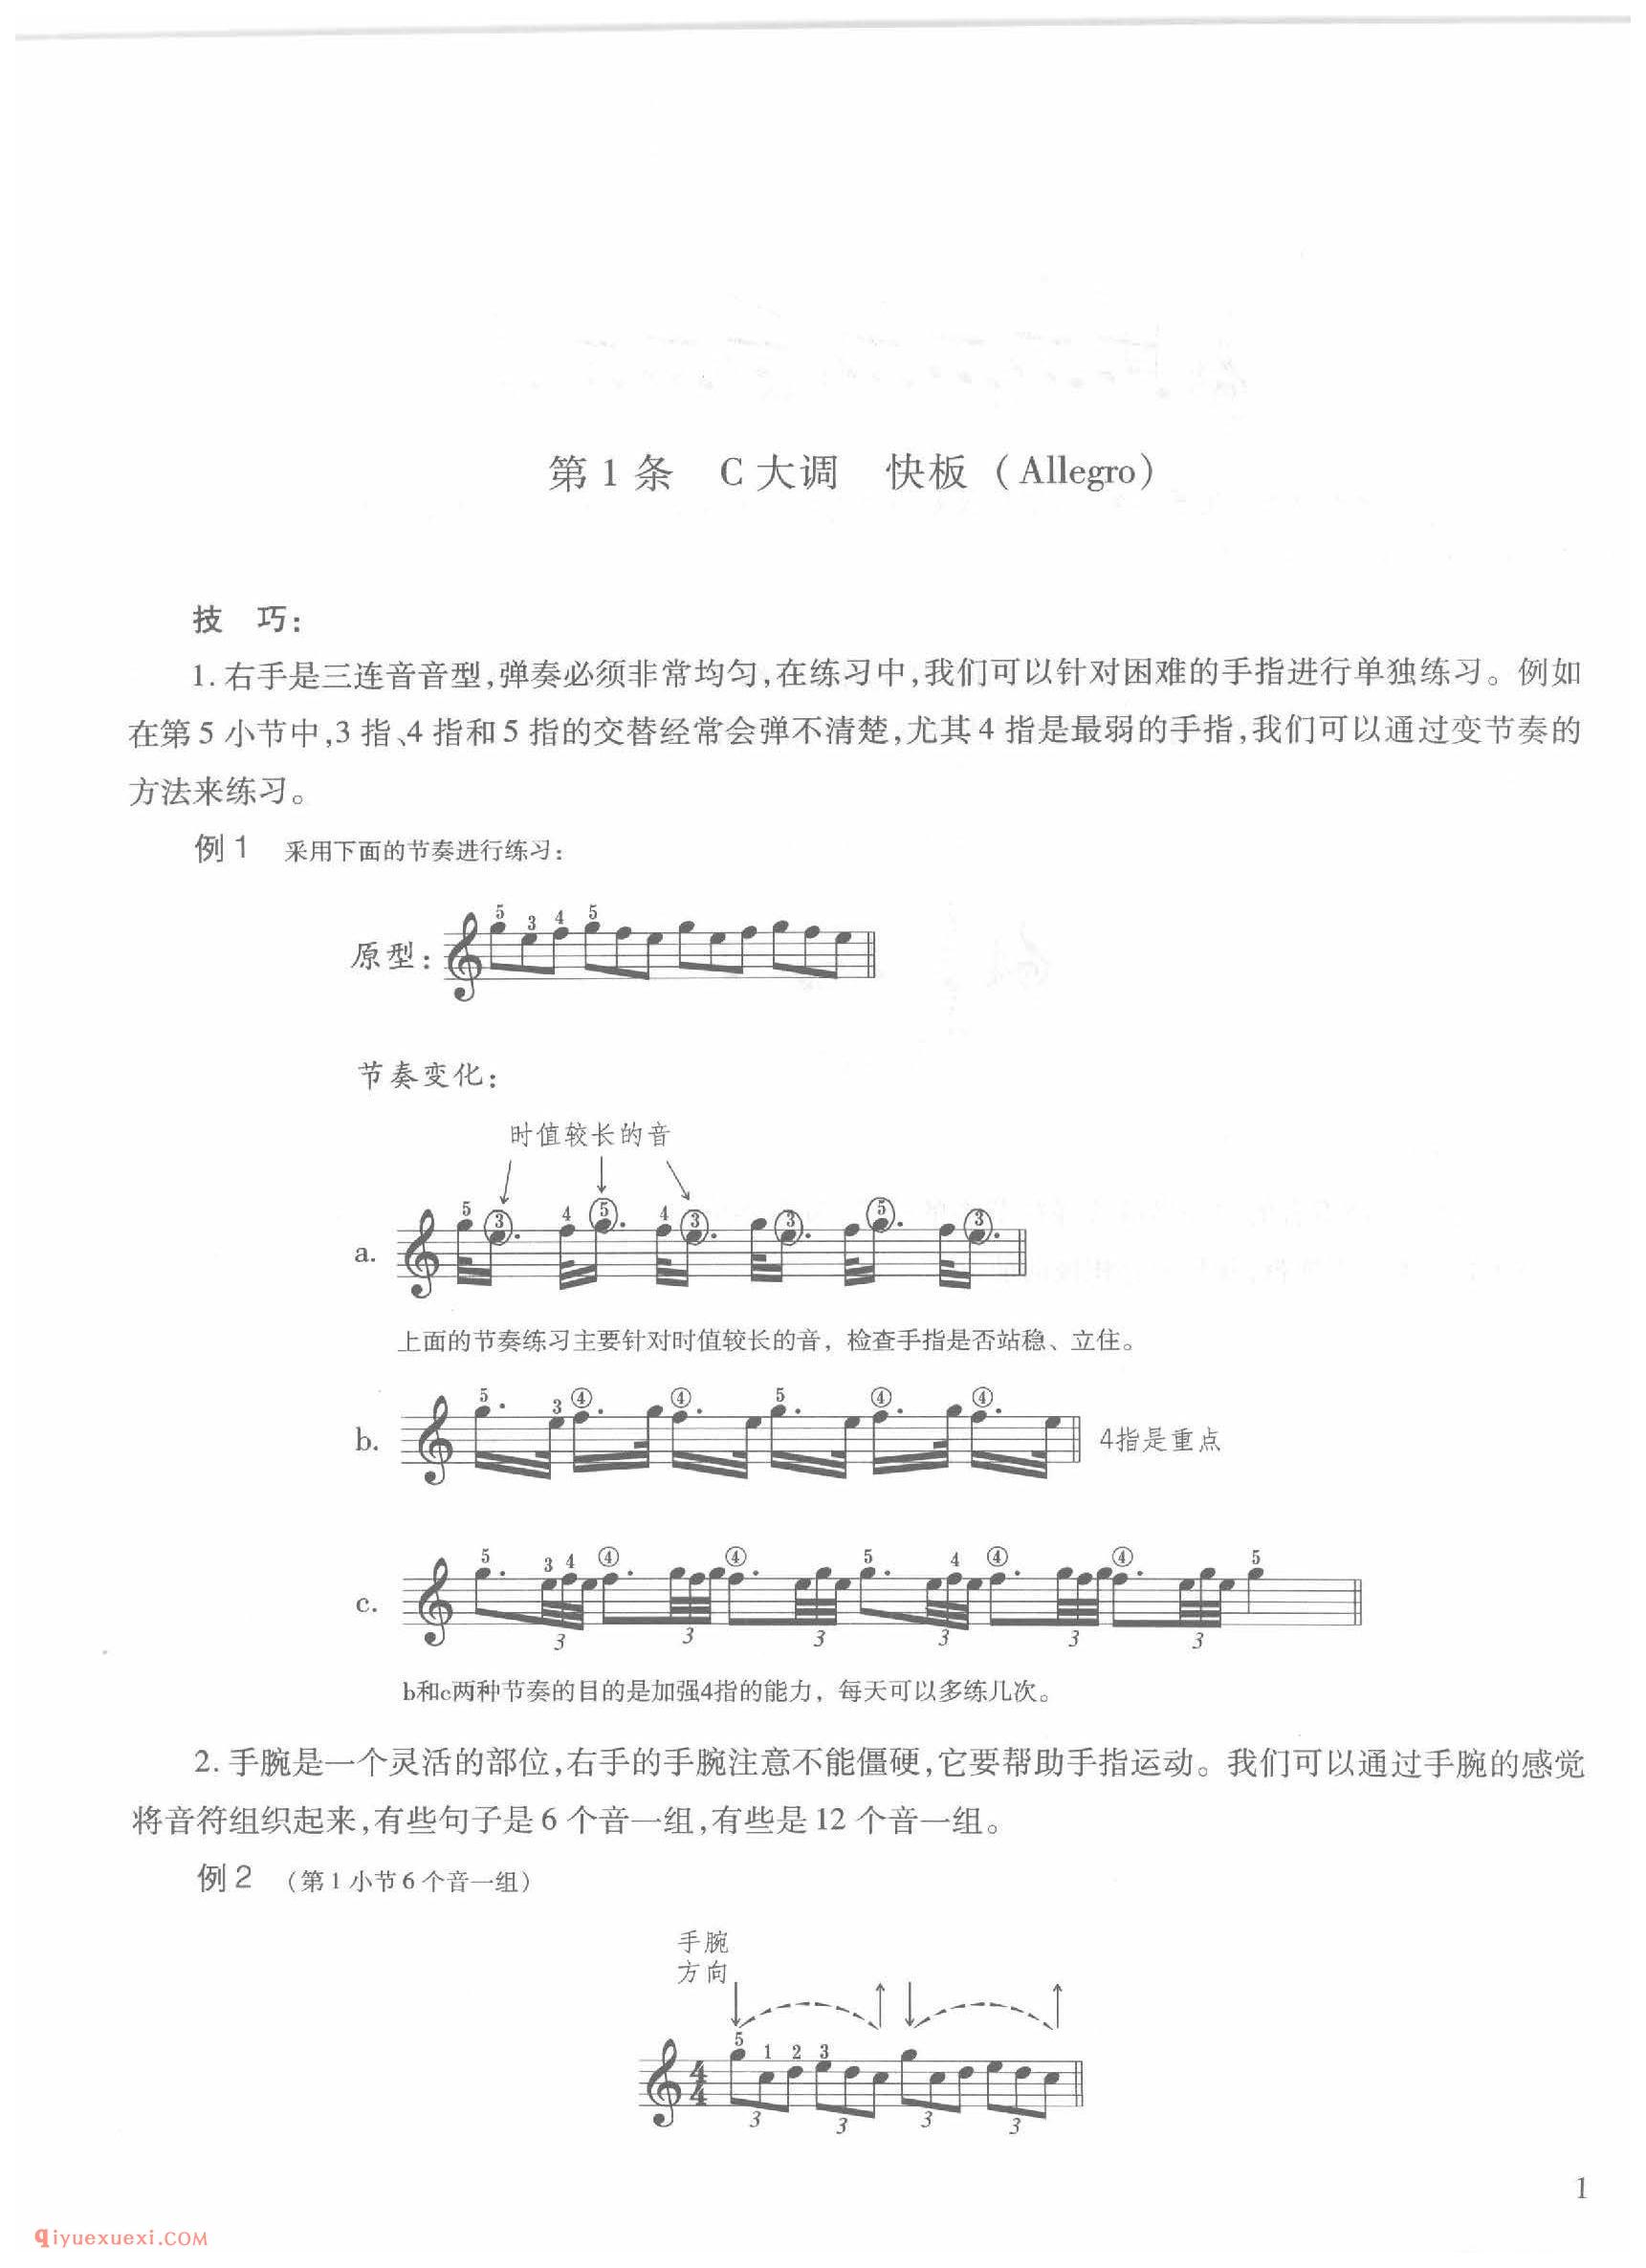 第1条 C大调 快板(Allegro)车尔尼钢琴作品849_常桦讲解 注释